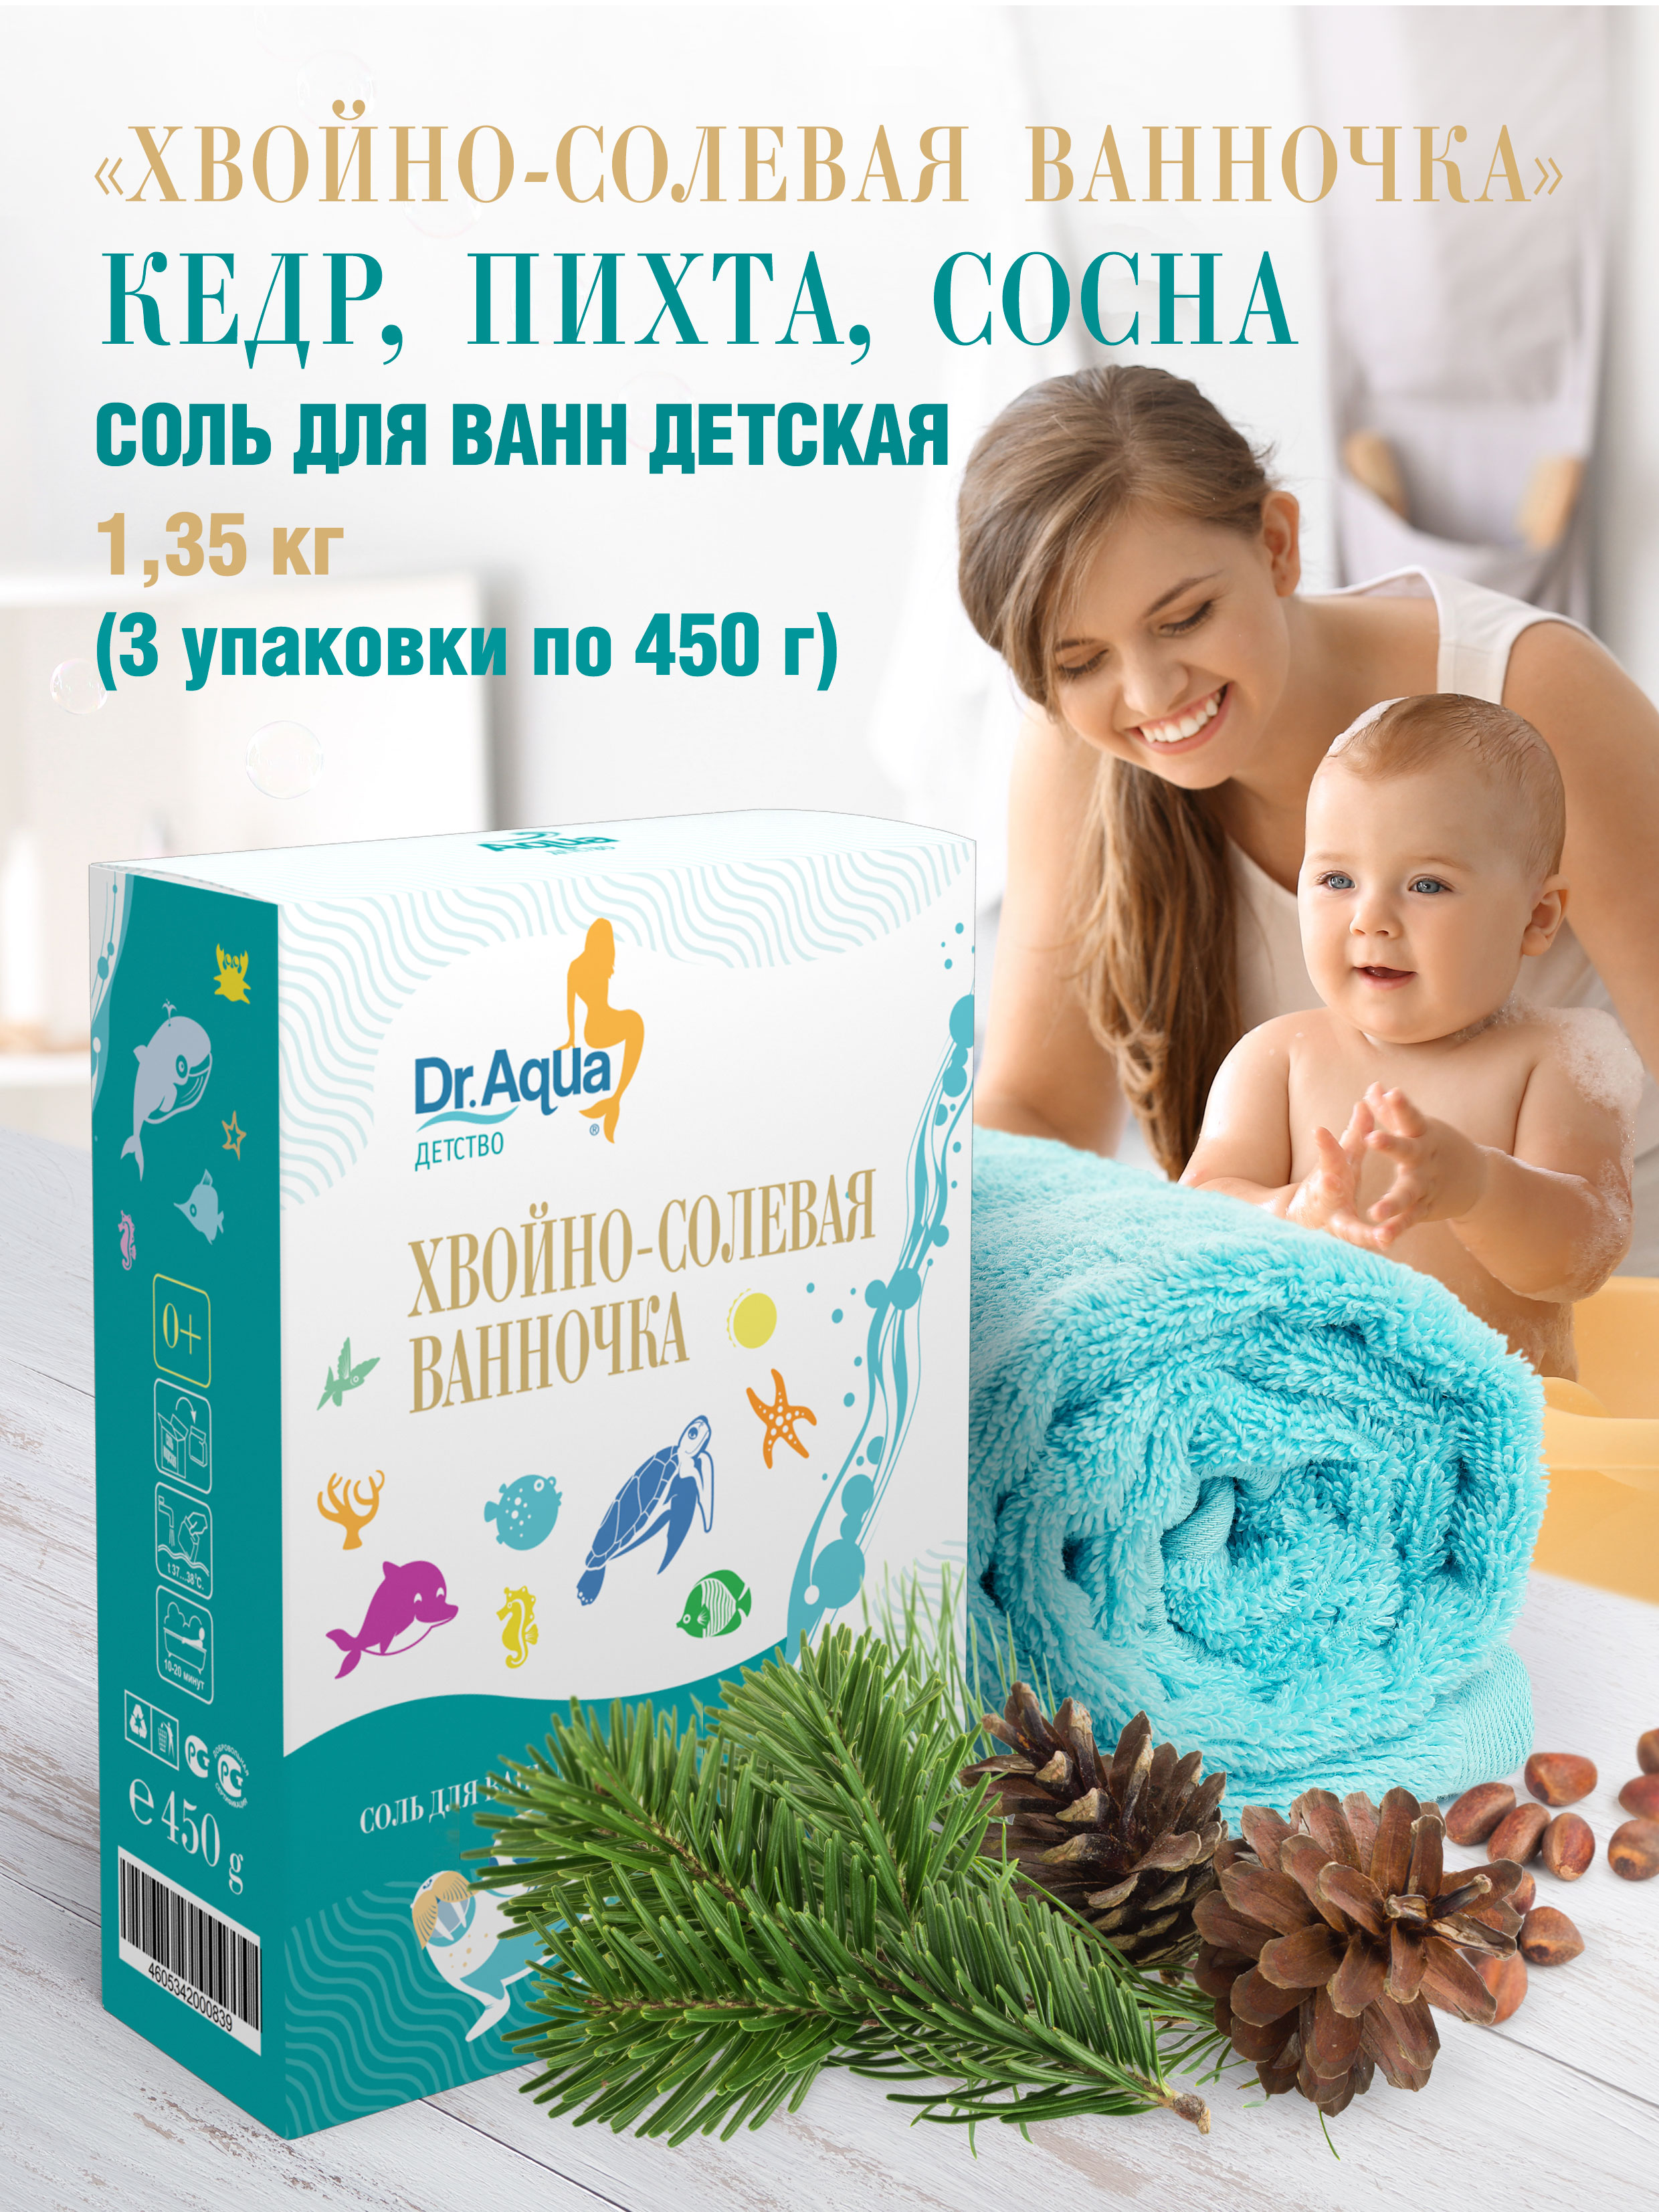 Детская соль для ванны Dr.Aqua Хвойно-солевая ванночка 3 упаковки по 450 г - фото 2